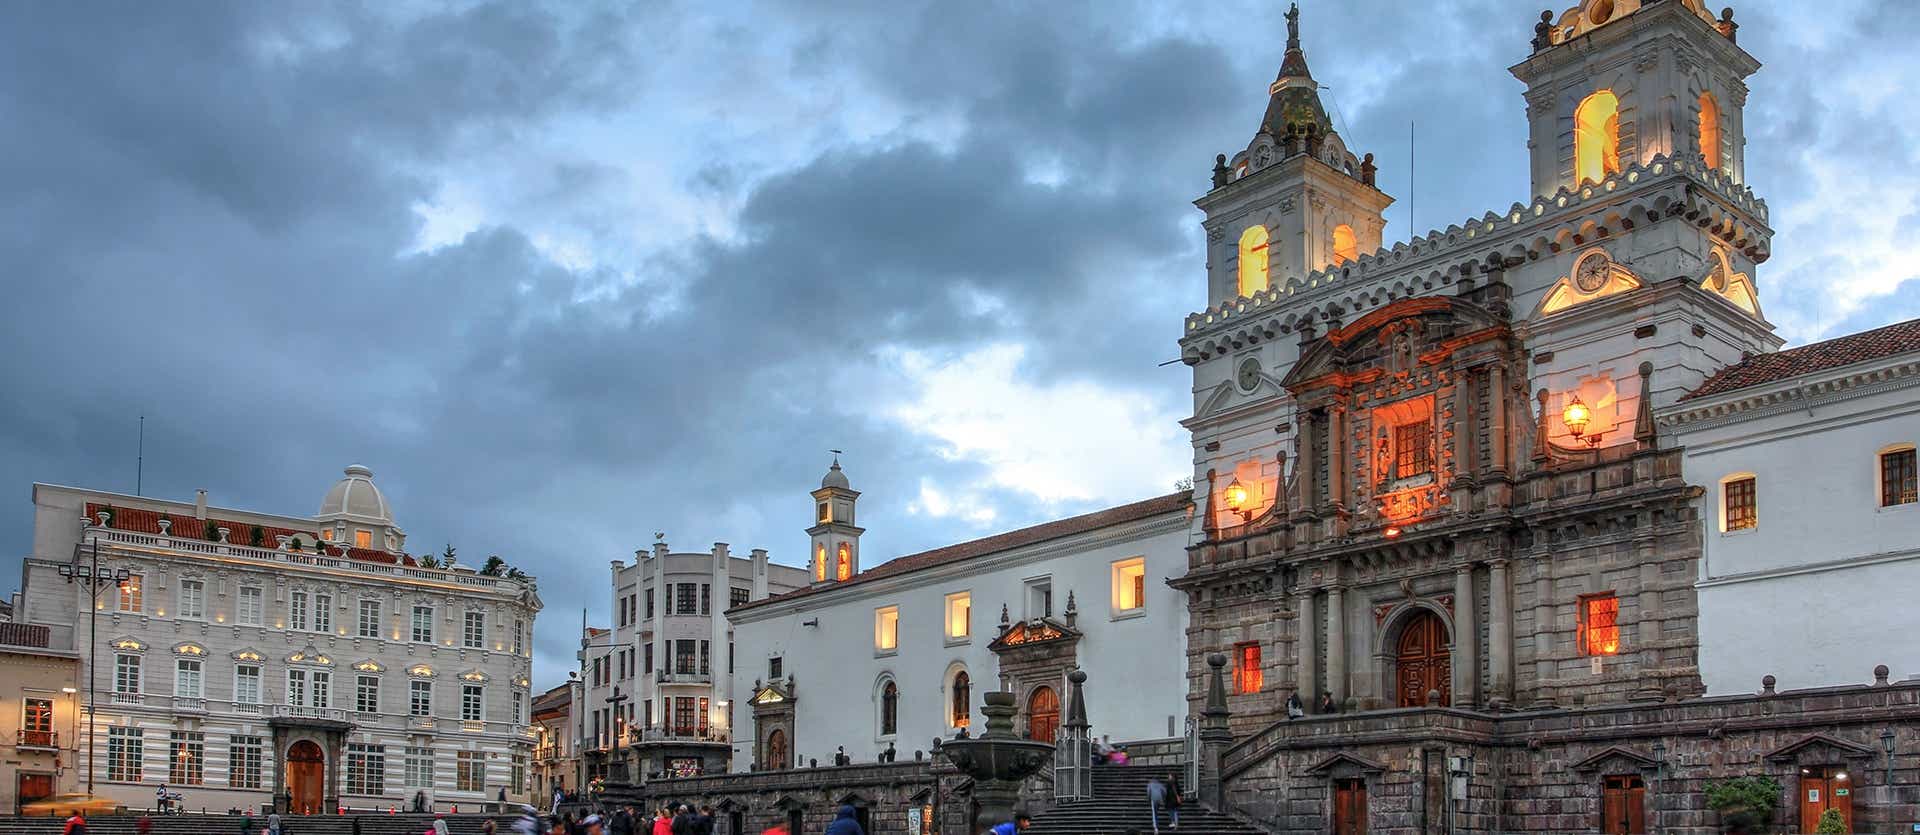 Quito <span class="iconos separador"></span> Ecuador